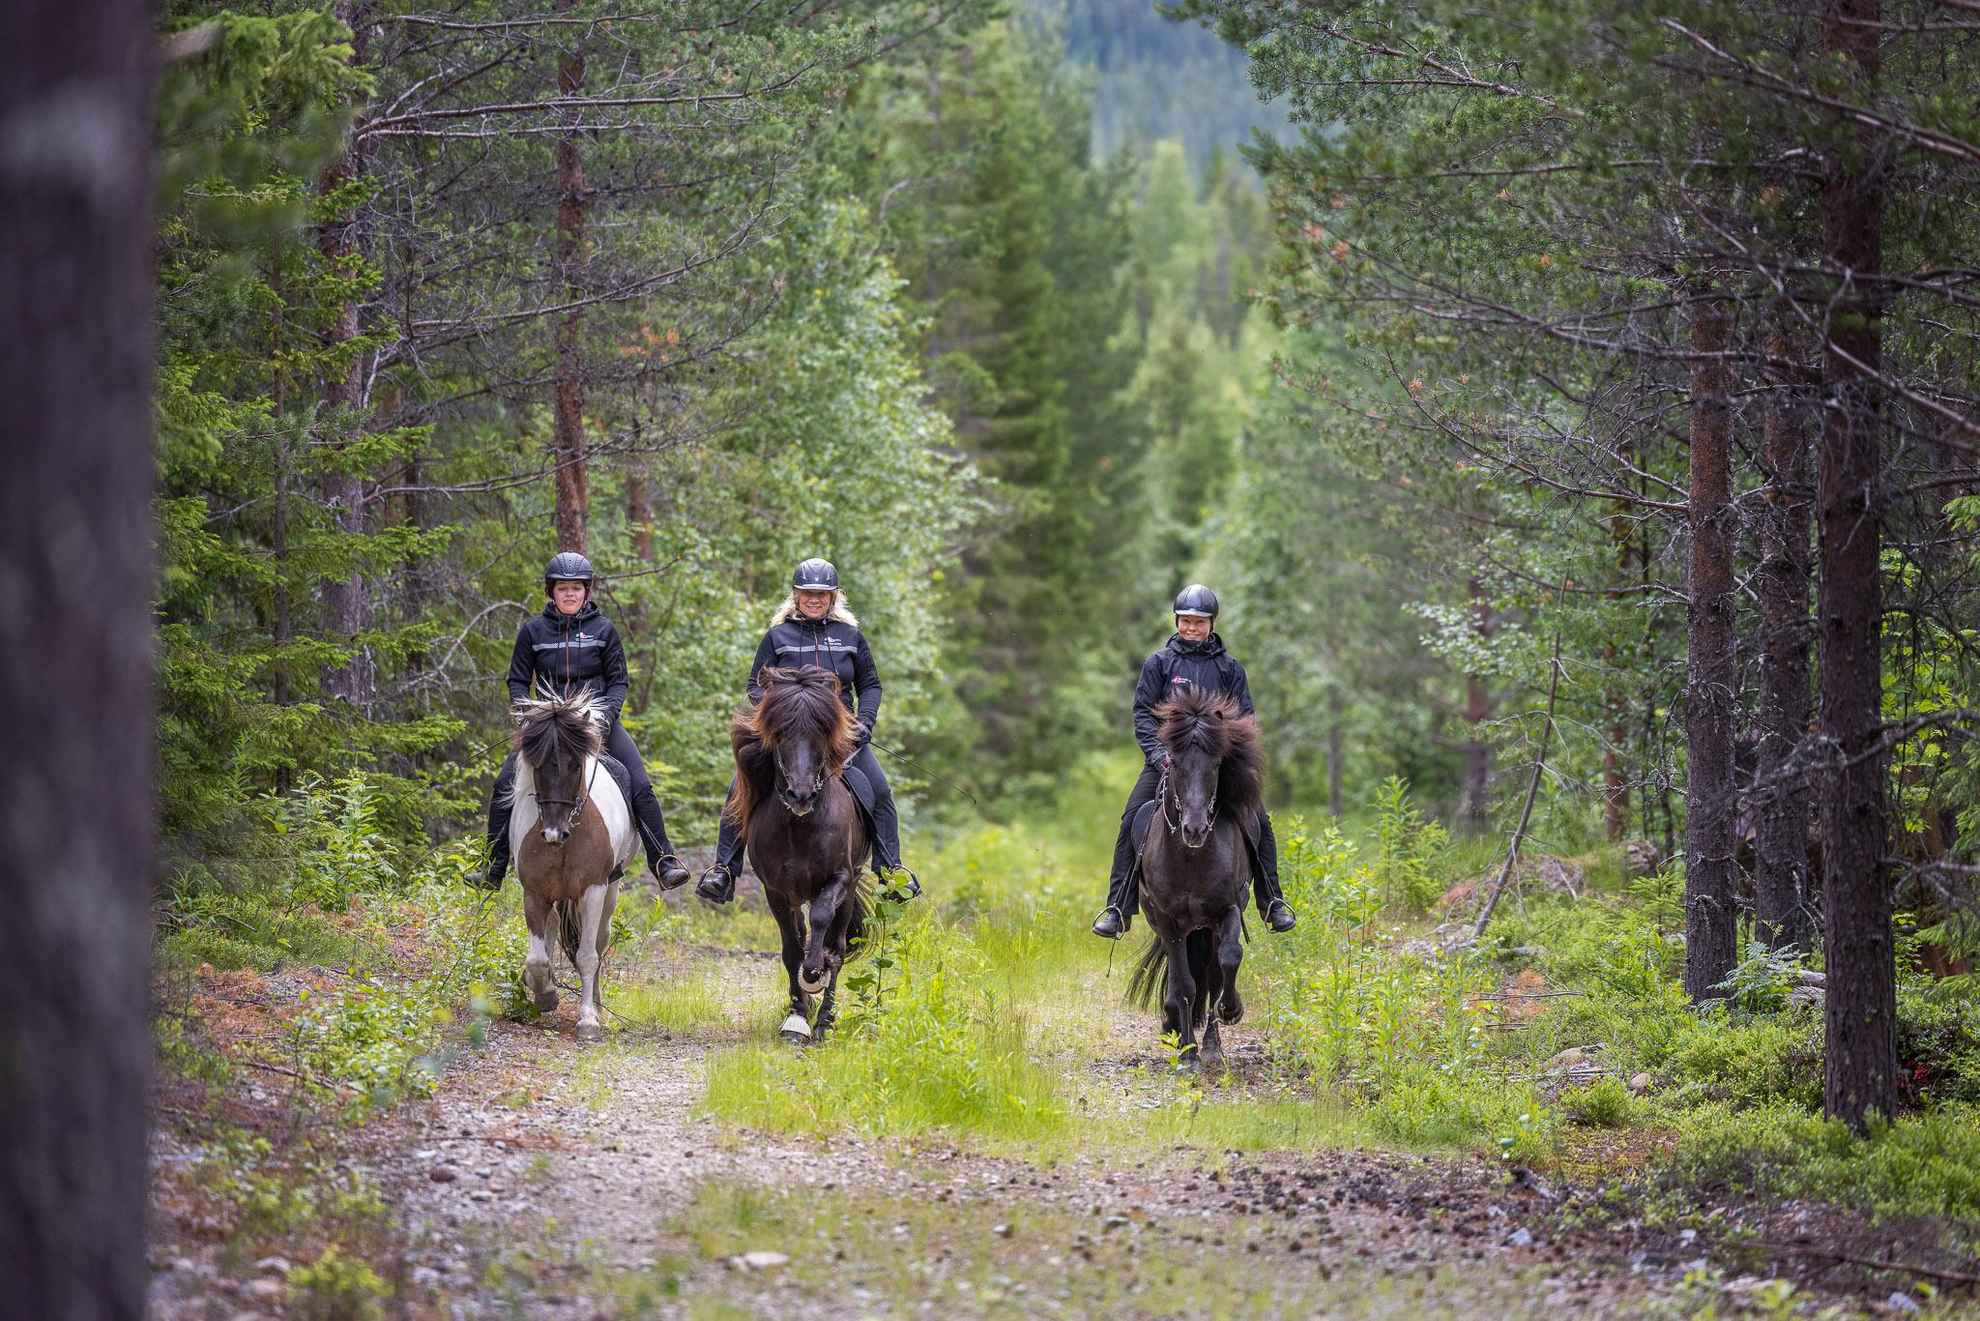 Trois femmes montant des chevaux islandais sur une route dans une forêt.